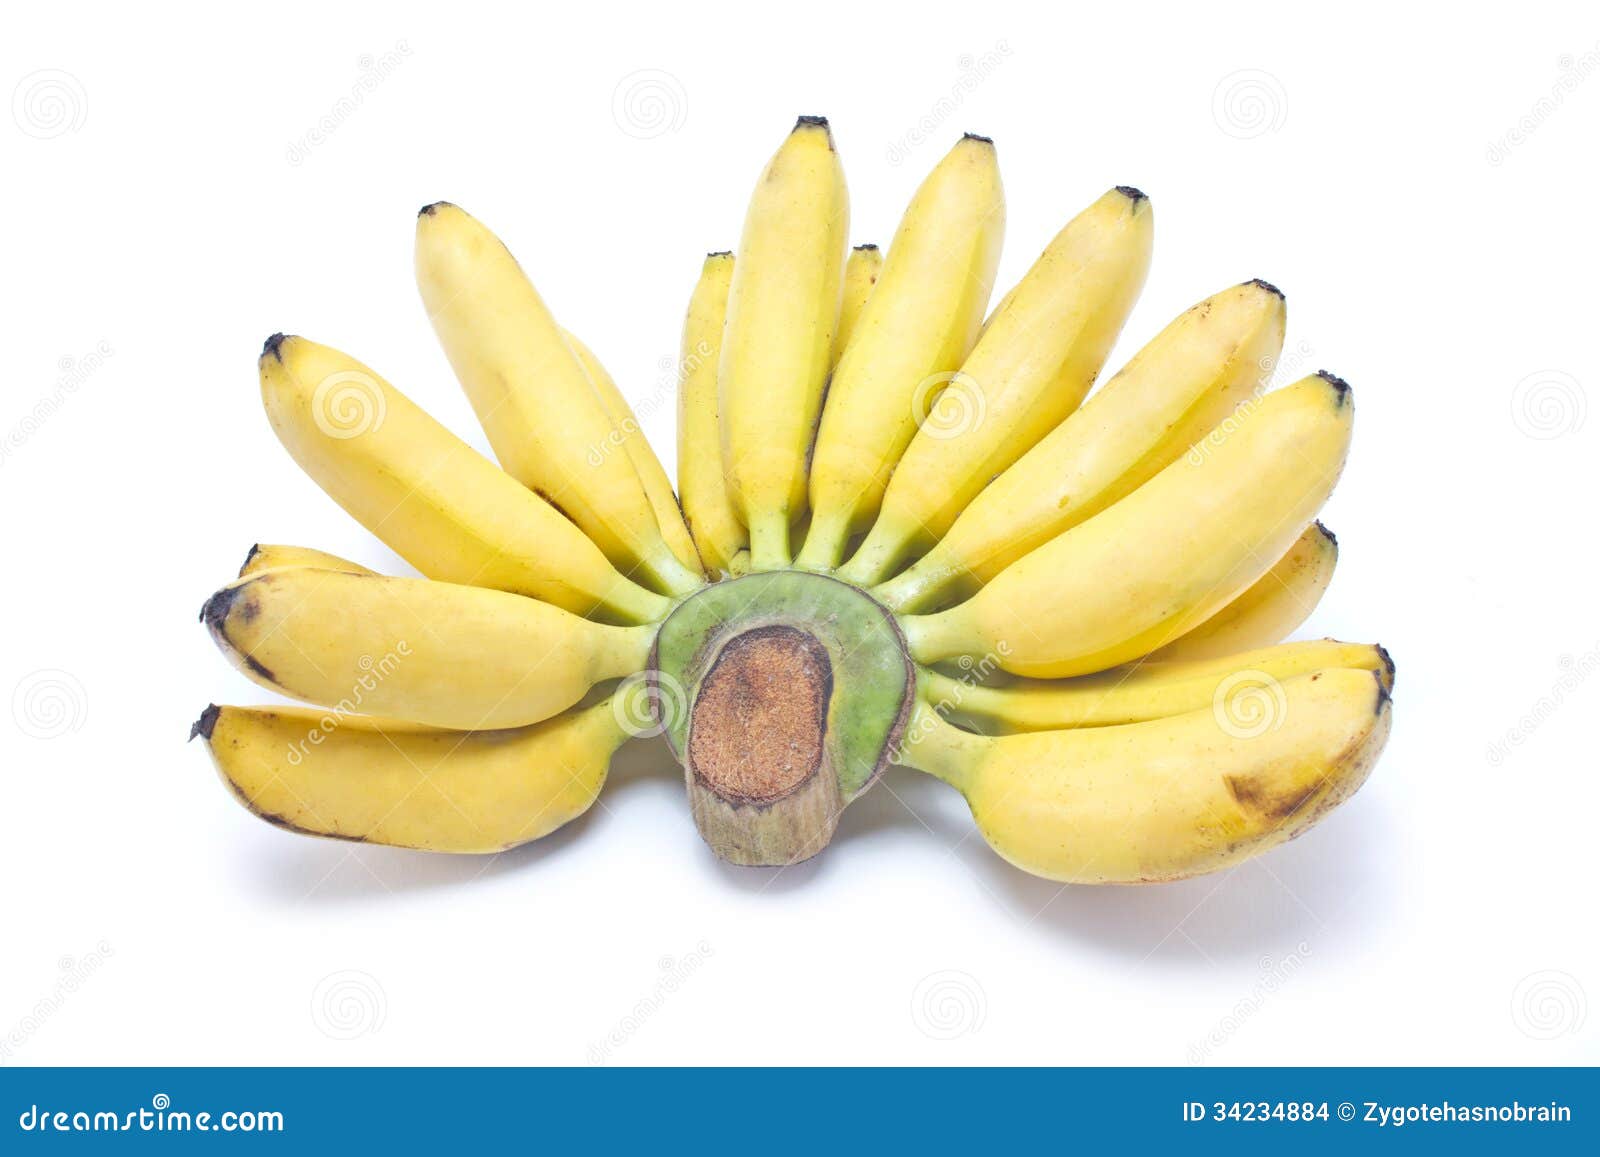 Asian Bananas 64